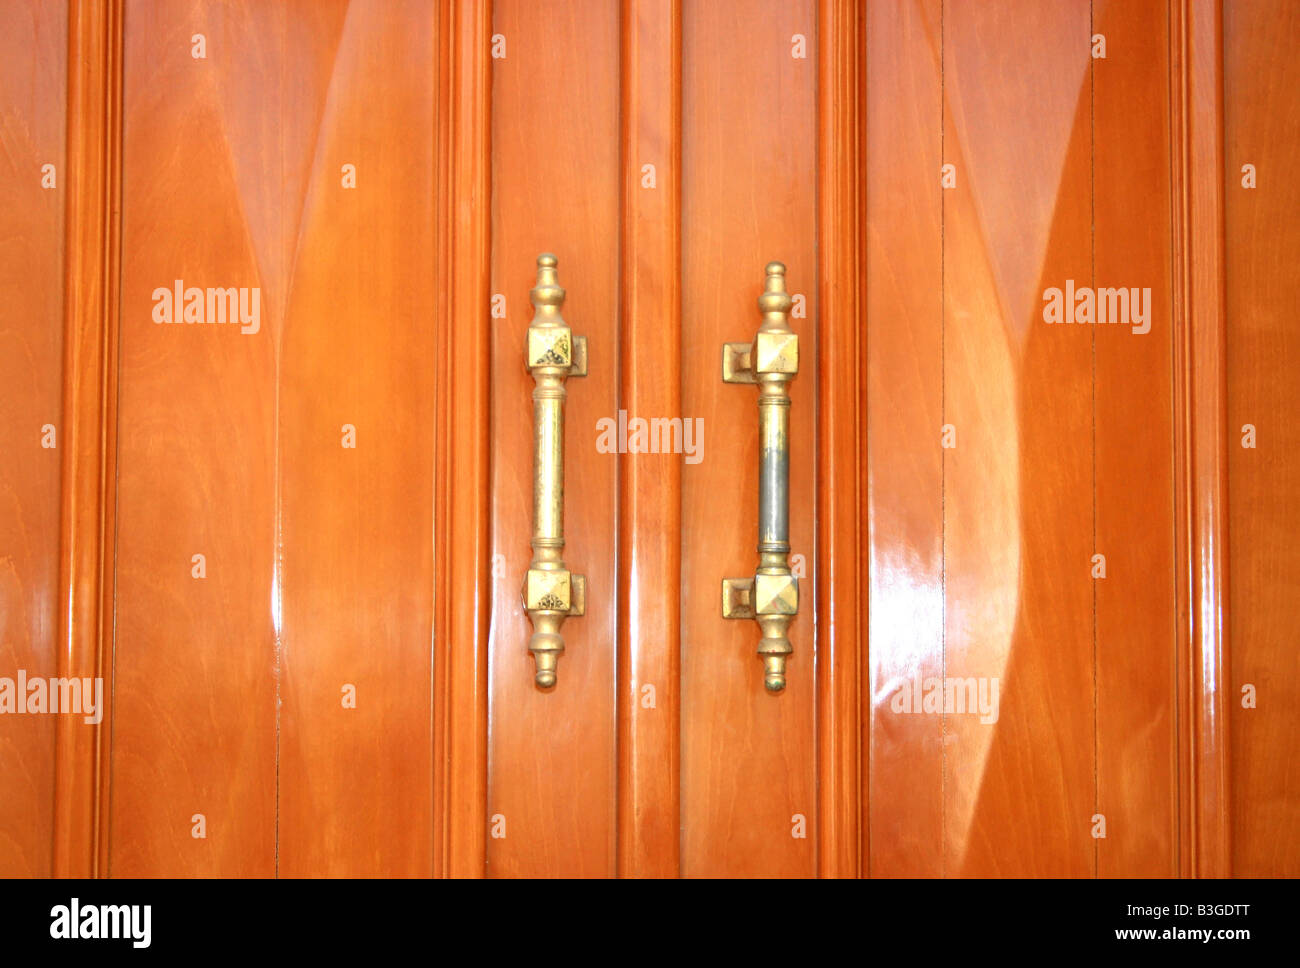 Wooden doors with metallic handles Stock Photo